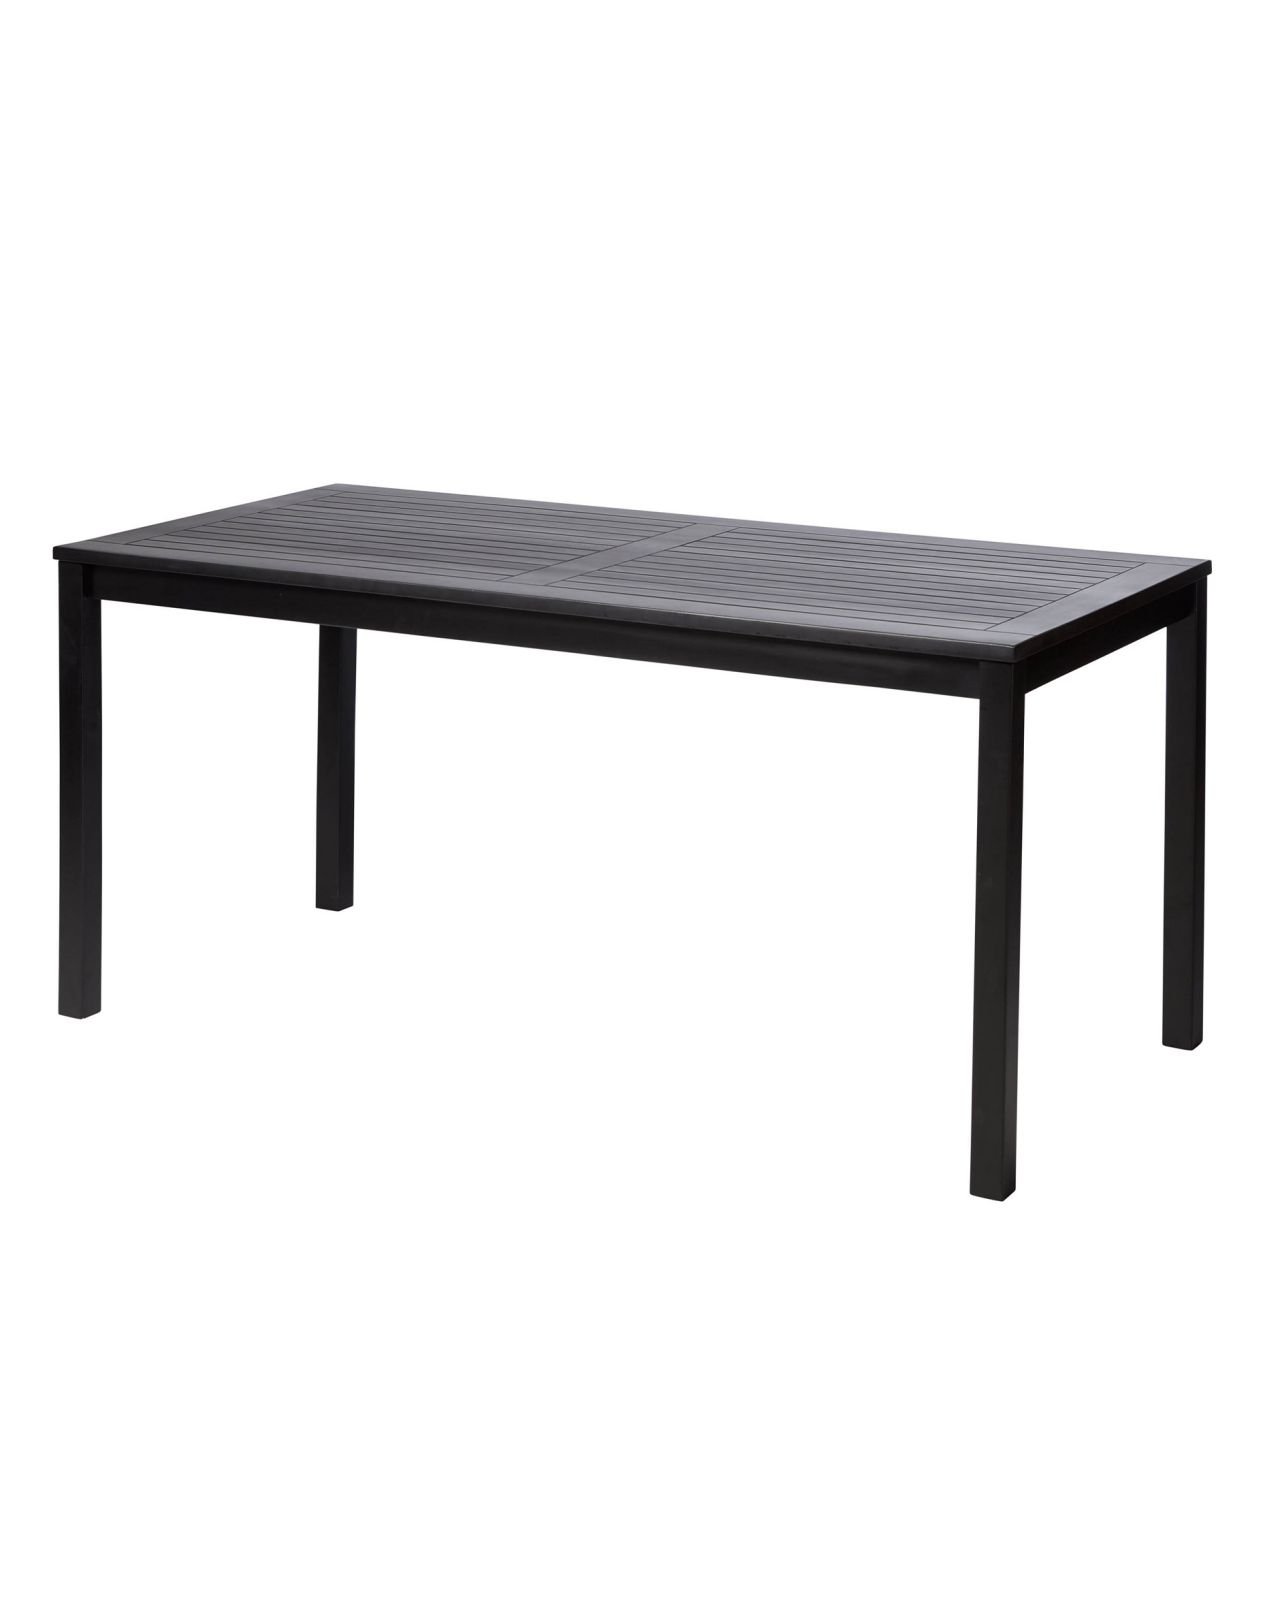 Rosenborg table black